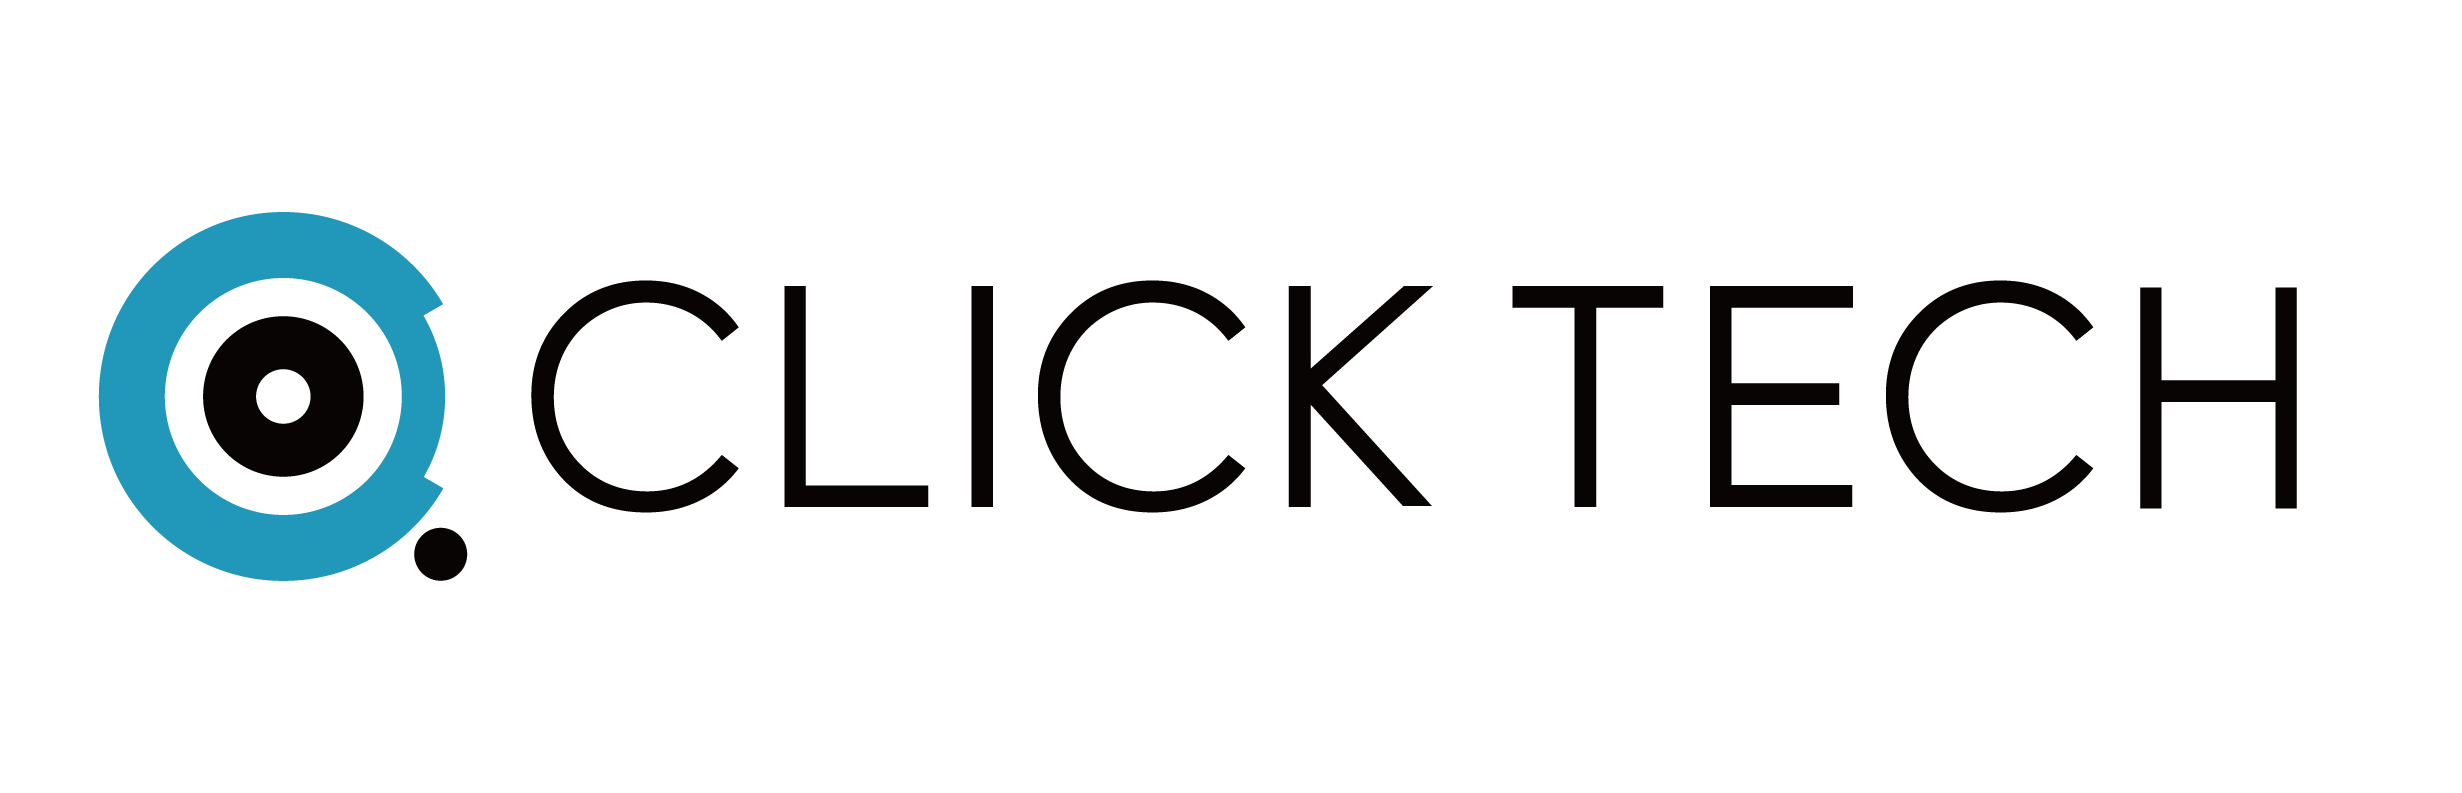 clicktech_logo_160729 [转换]-02.png